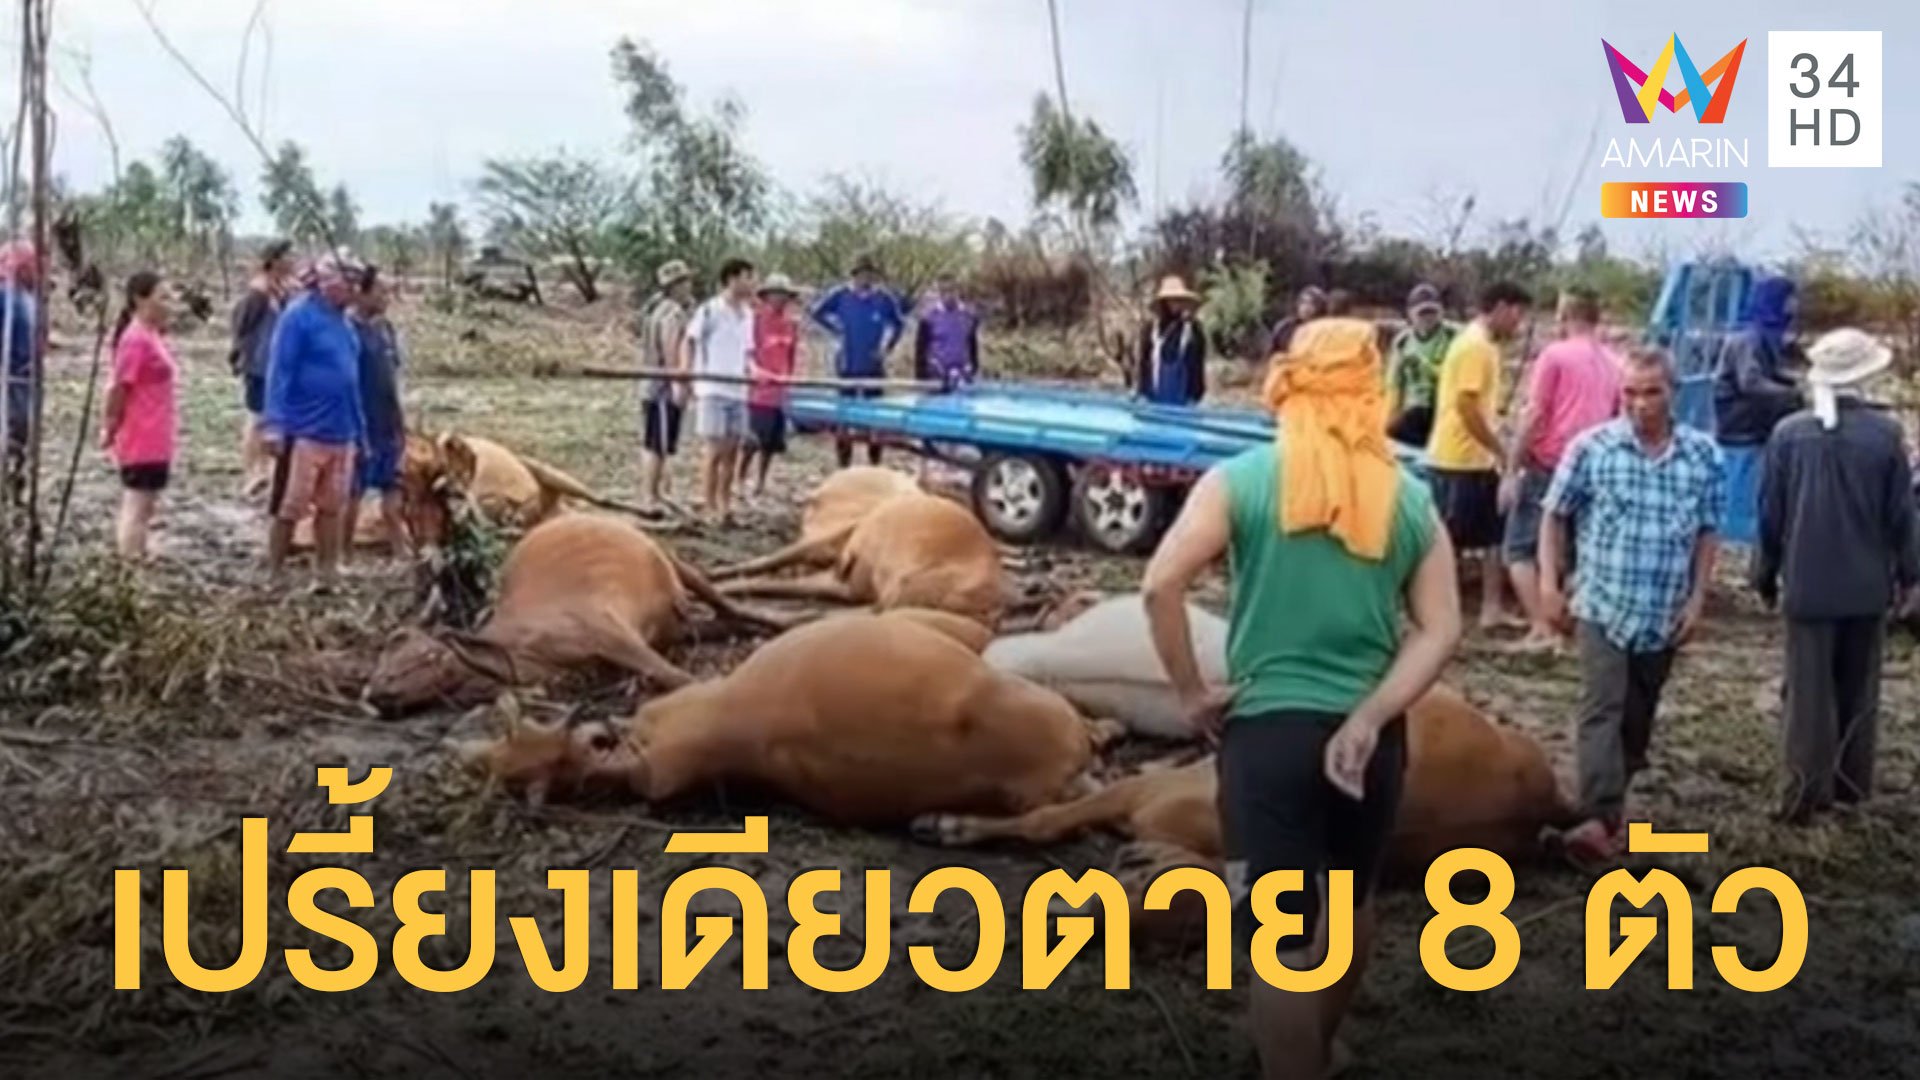 ฟ้าผ่าเปรี้ยงเดียว วัวตายรวด 8 ตัว คนโดนด้วย | ข่าวอรุณอมรินทร์ | 26 พ.ค. 63 | AMARIN TVHD34